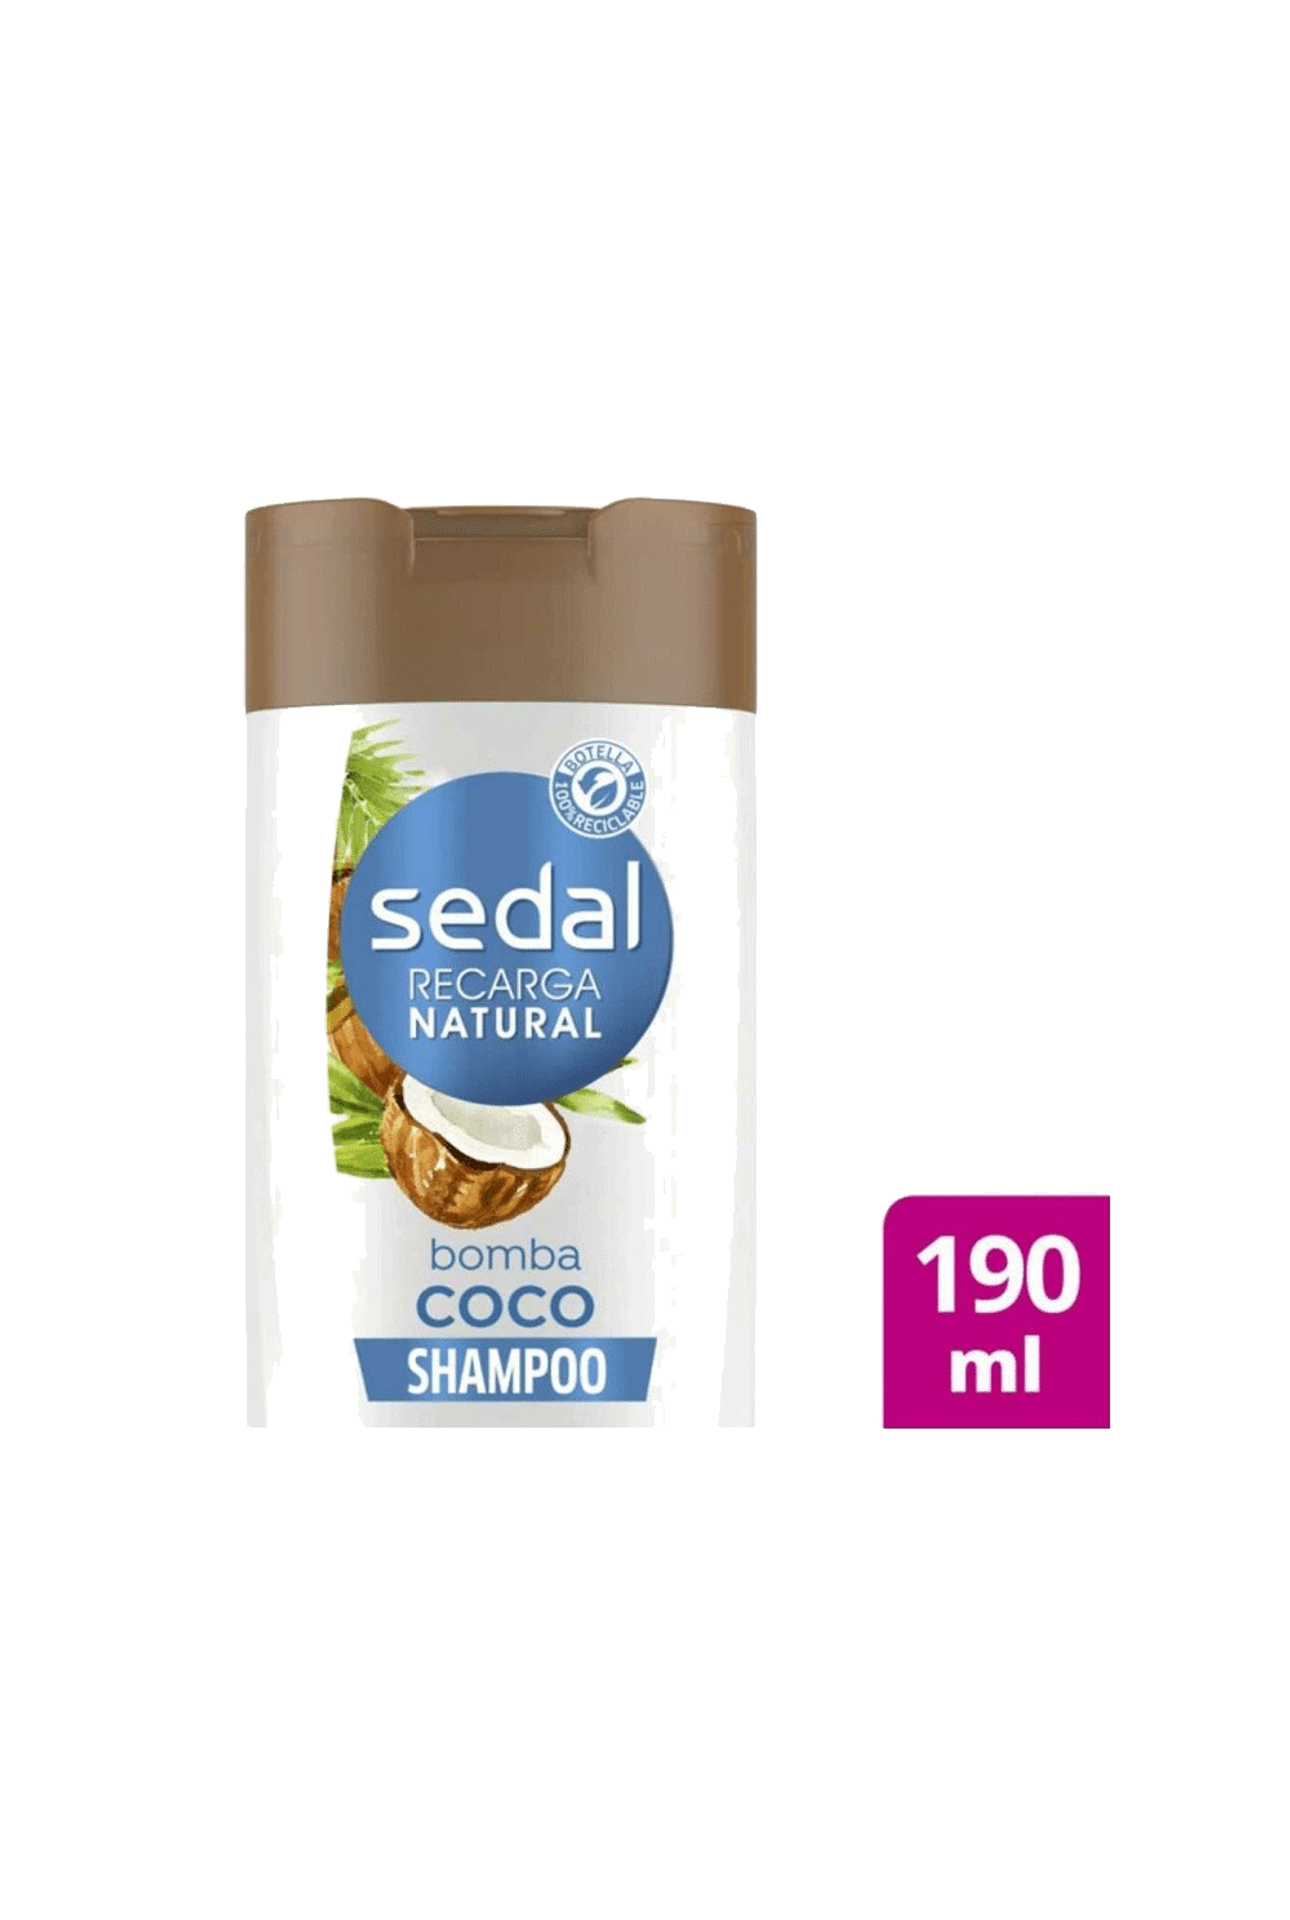 Sedal-Shampoo-Bomba-Coco-x-190-ml-7791293040905_img1